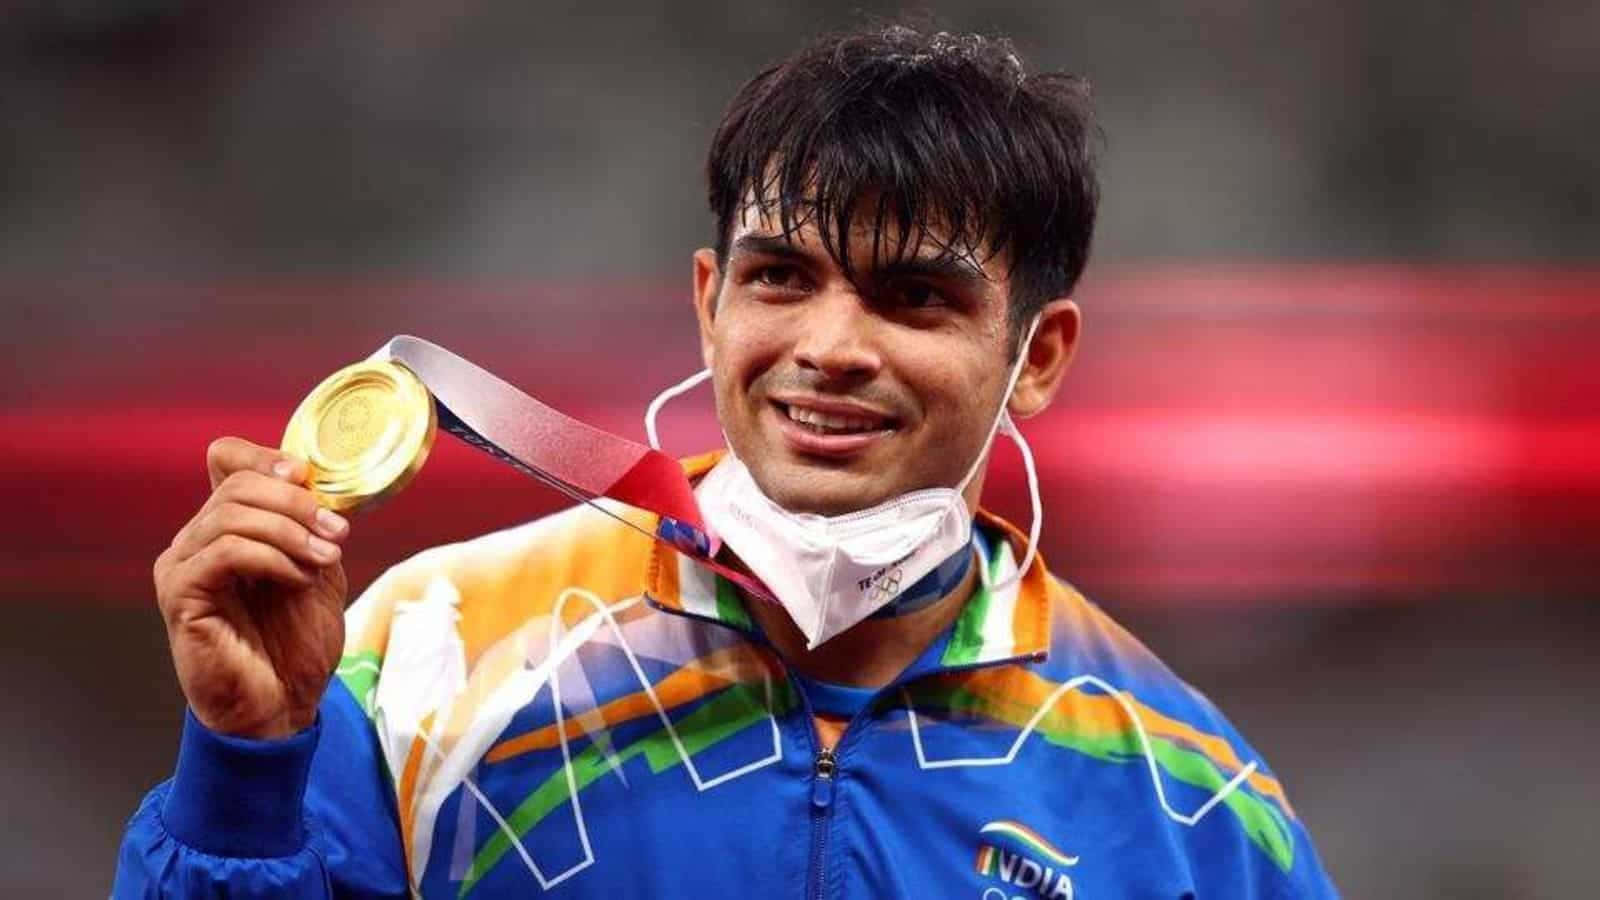 Neerajchopra, O Arremessador De Dardo De Destaque Da Índia E Medalhista De Ouro Nos Jogos Asiáticos